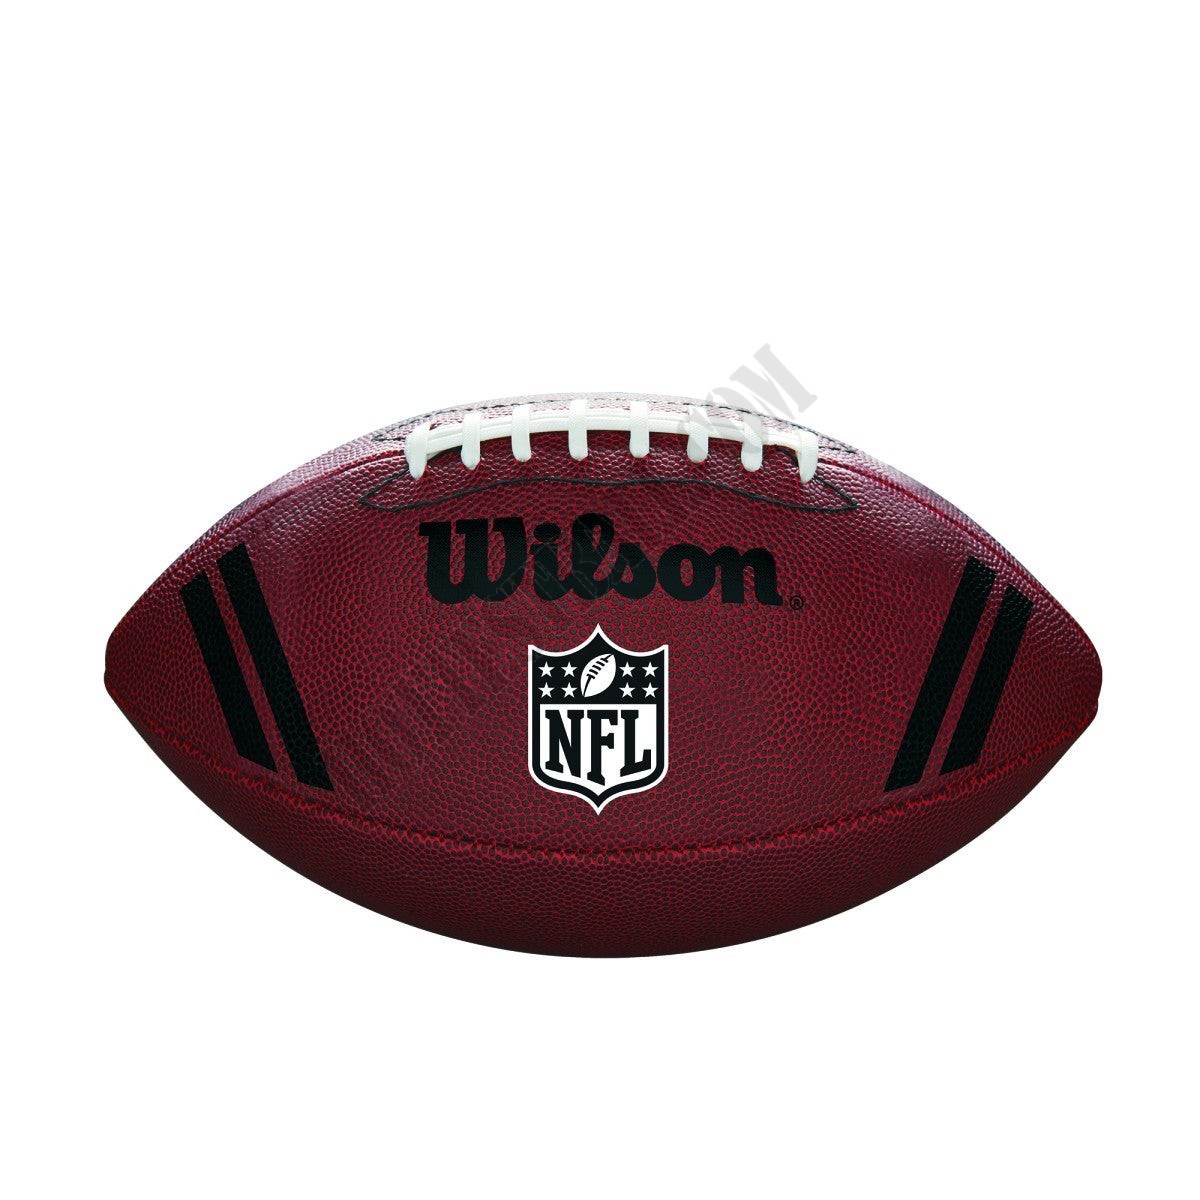 NFL Spotlight Football ● Wilson Promotions - NFL Spotlight Football ● Wilson Promotions